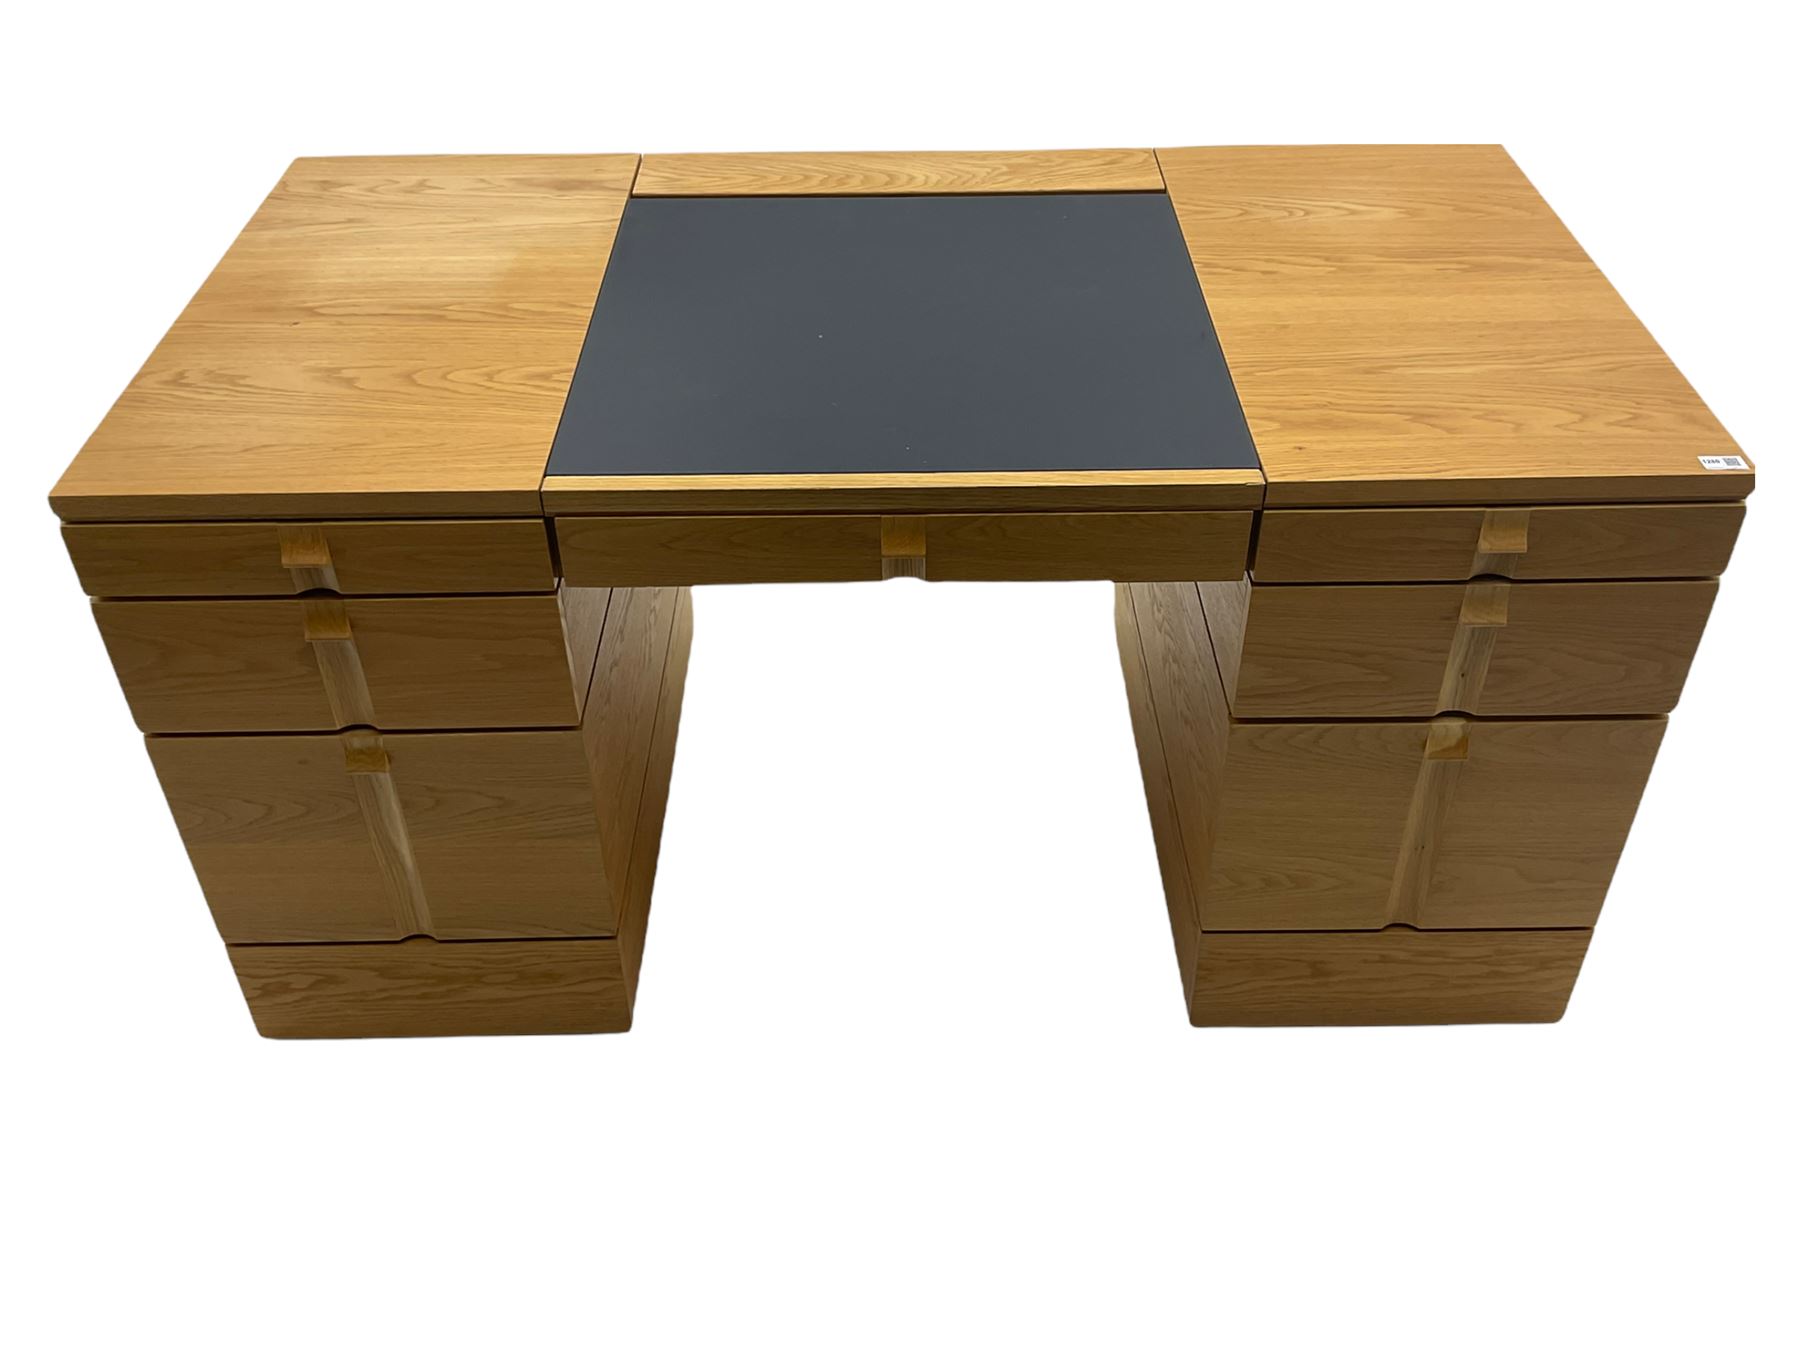 Marks and Spencer Home - light oak office desk - Image 2 of 11